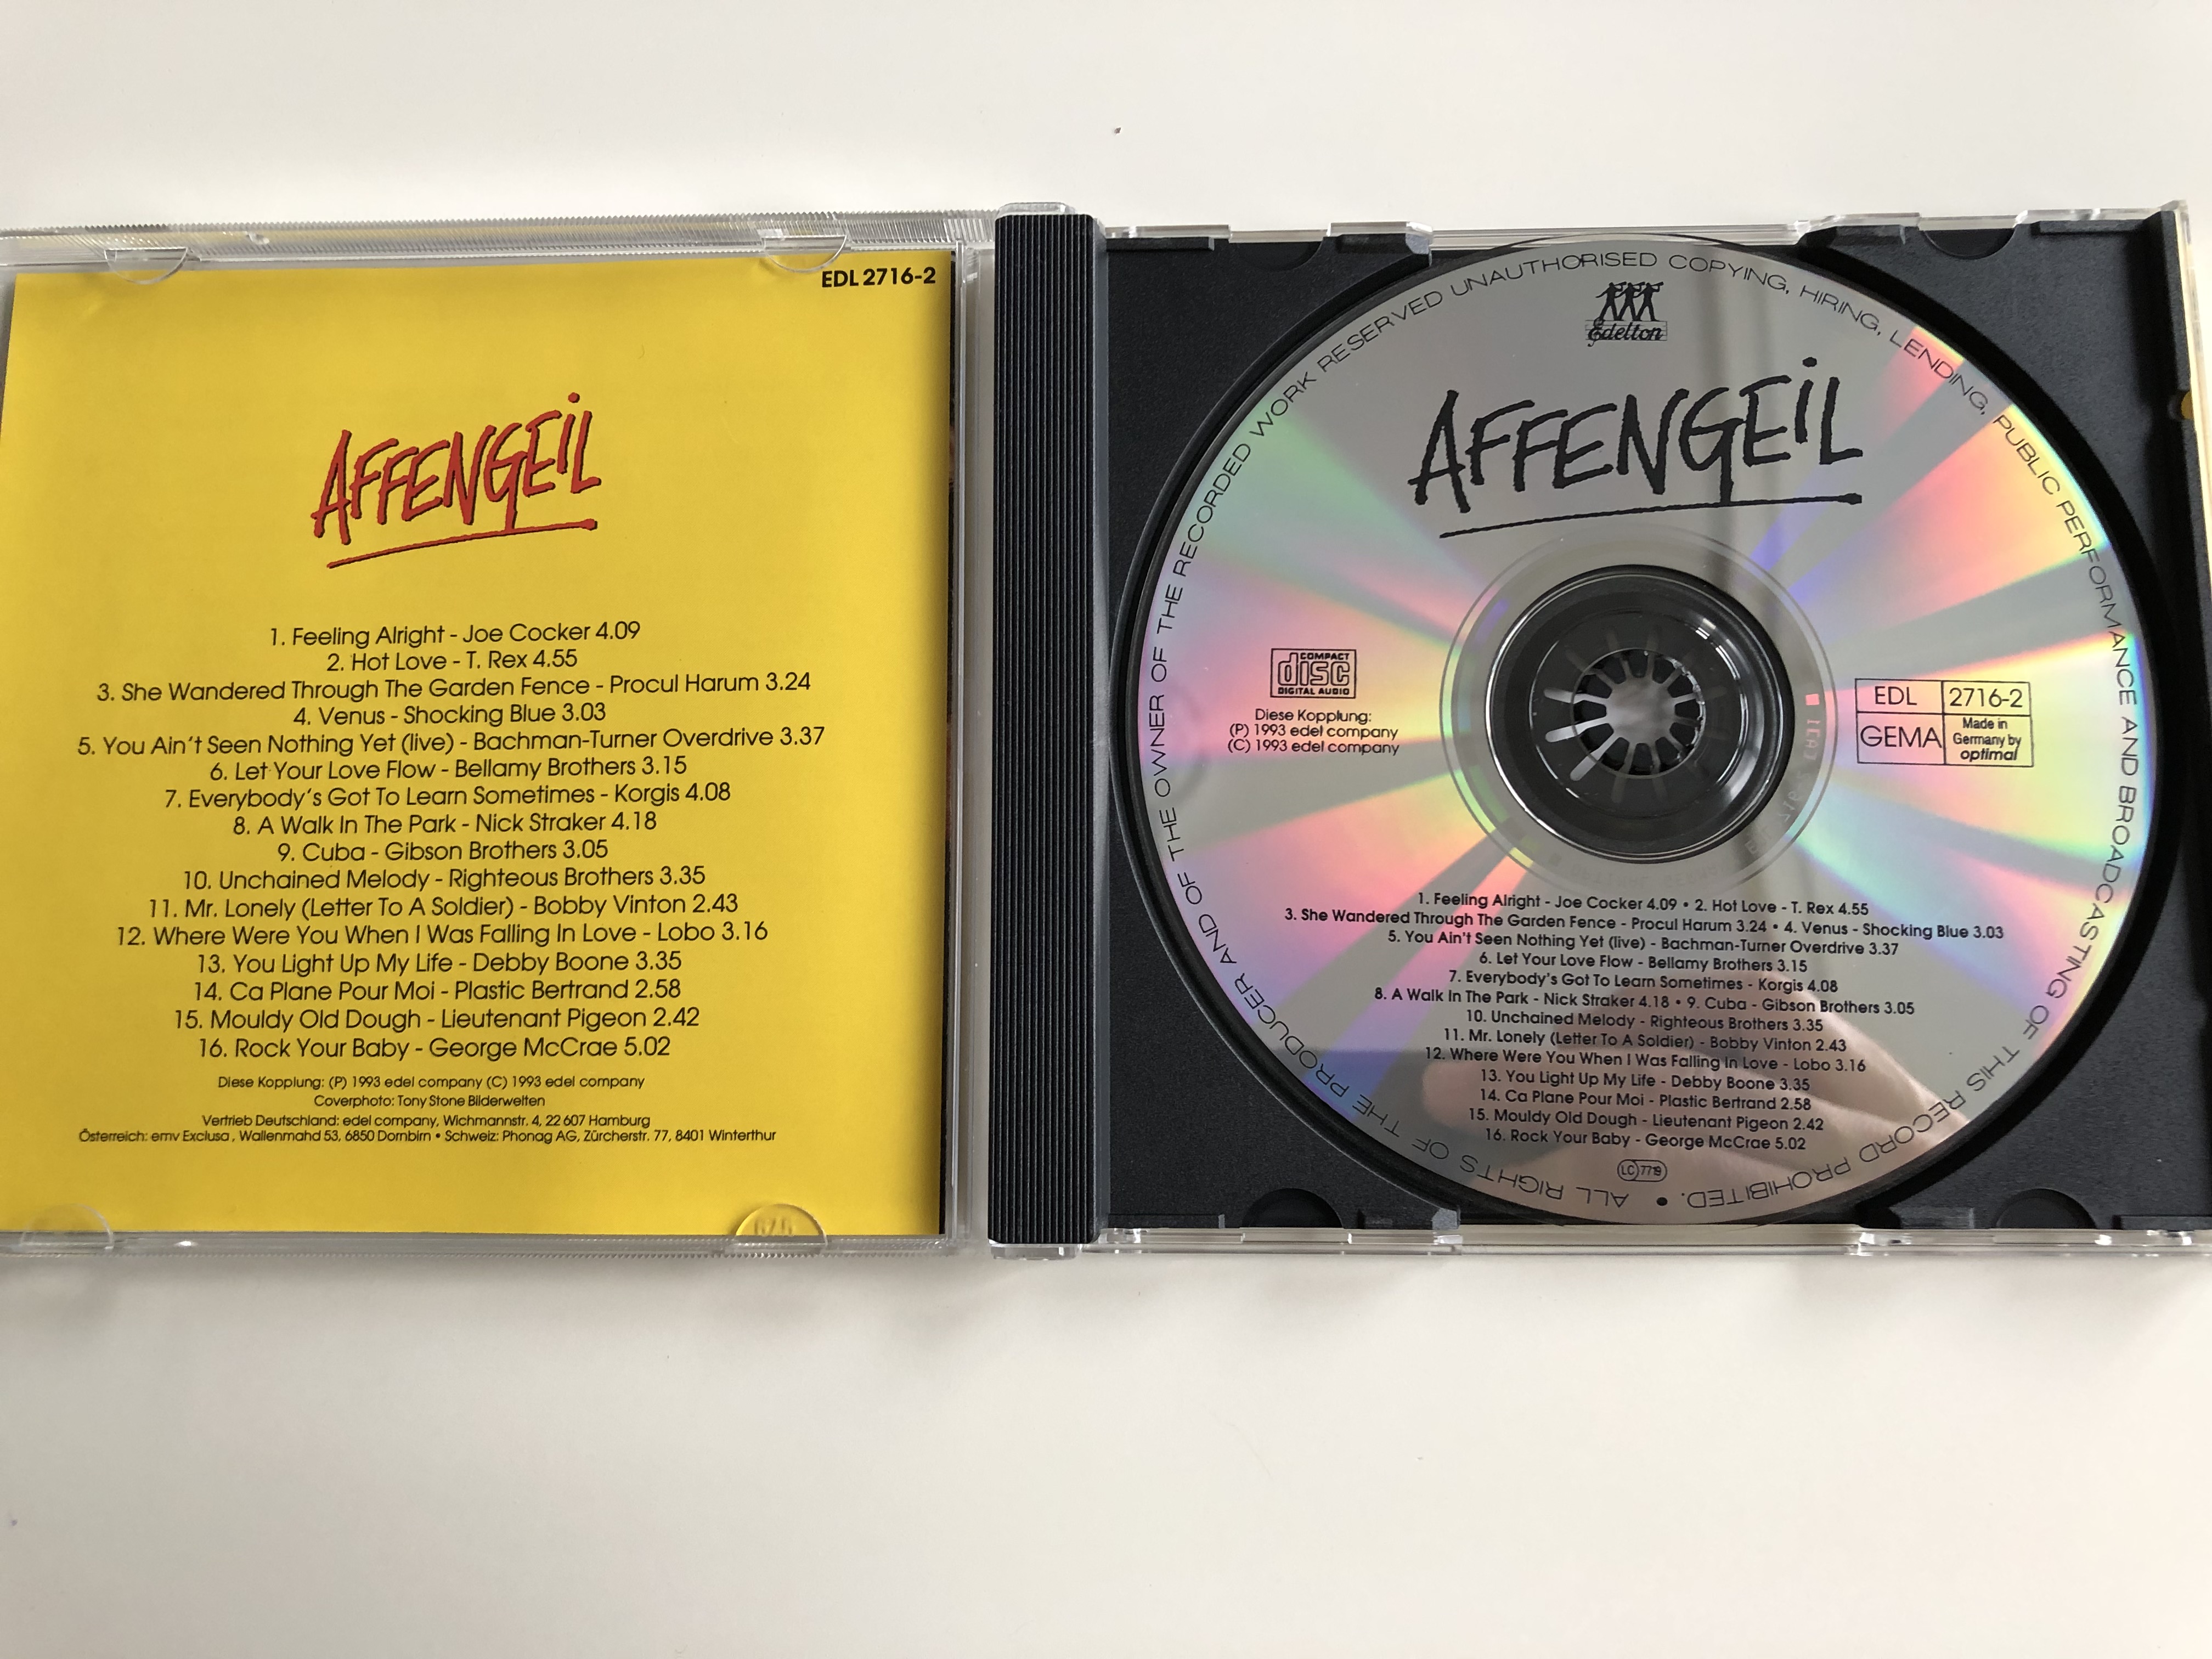 affengeil-16-superstarke-oldies-aus-der-tv-werbung-audio-cd-1993-edl2716-2-3-.jpg